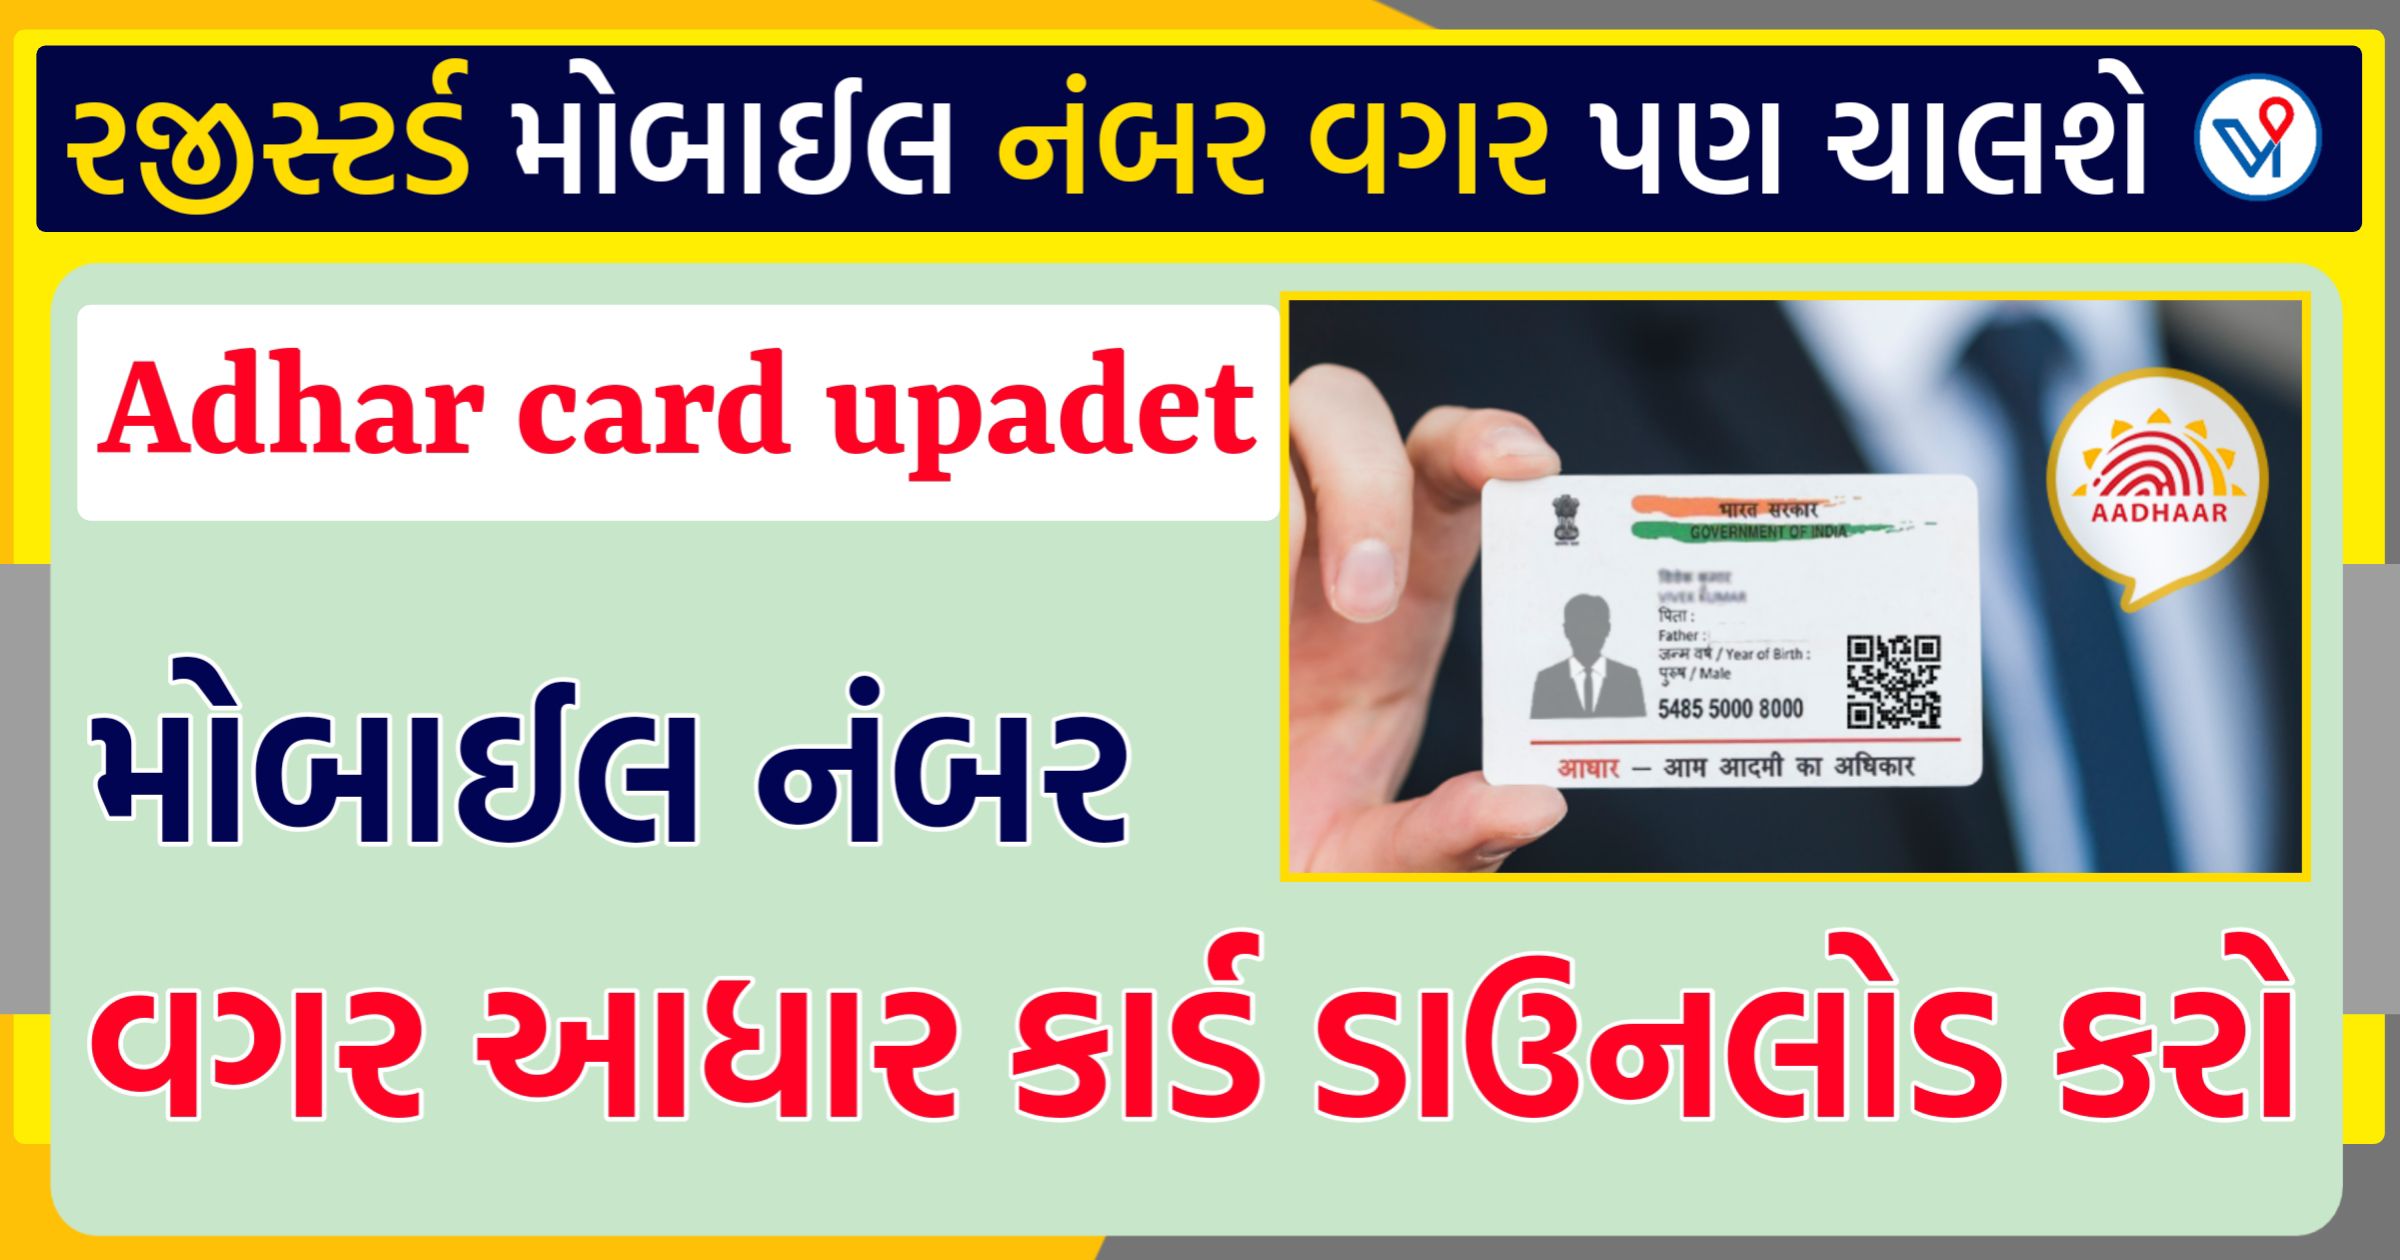 Aadhaar Card ડાઉનલોડ, રજિસ્ટર્ડ મોબાઇલ નંબર વગર પણ ચાલશે કામ, જાણો કેવી રીતે,